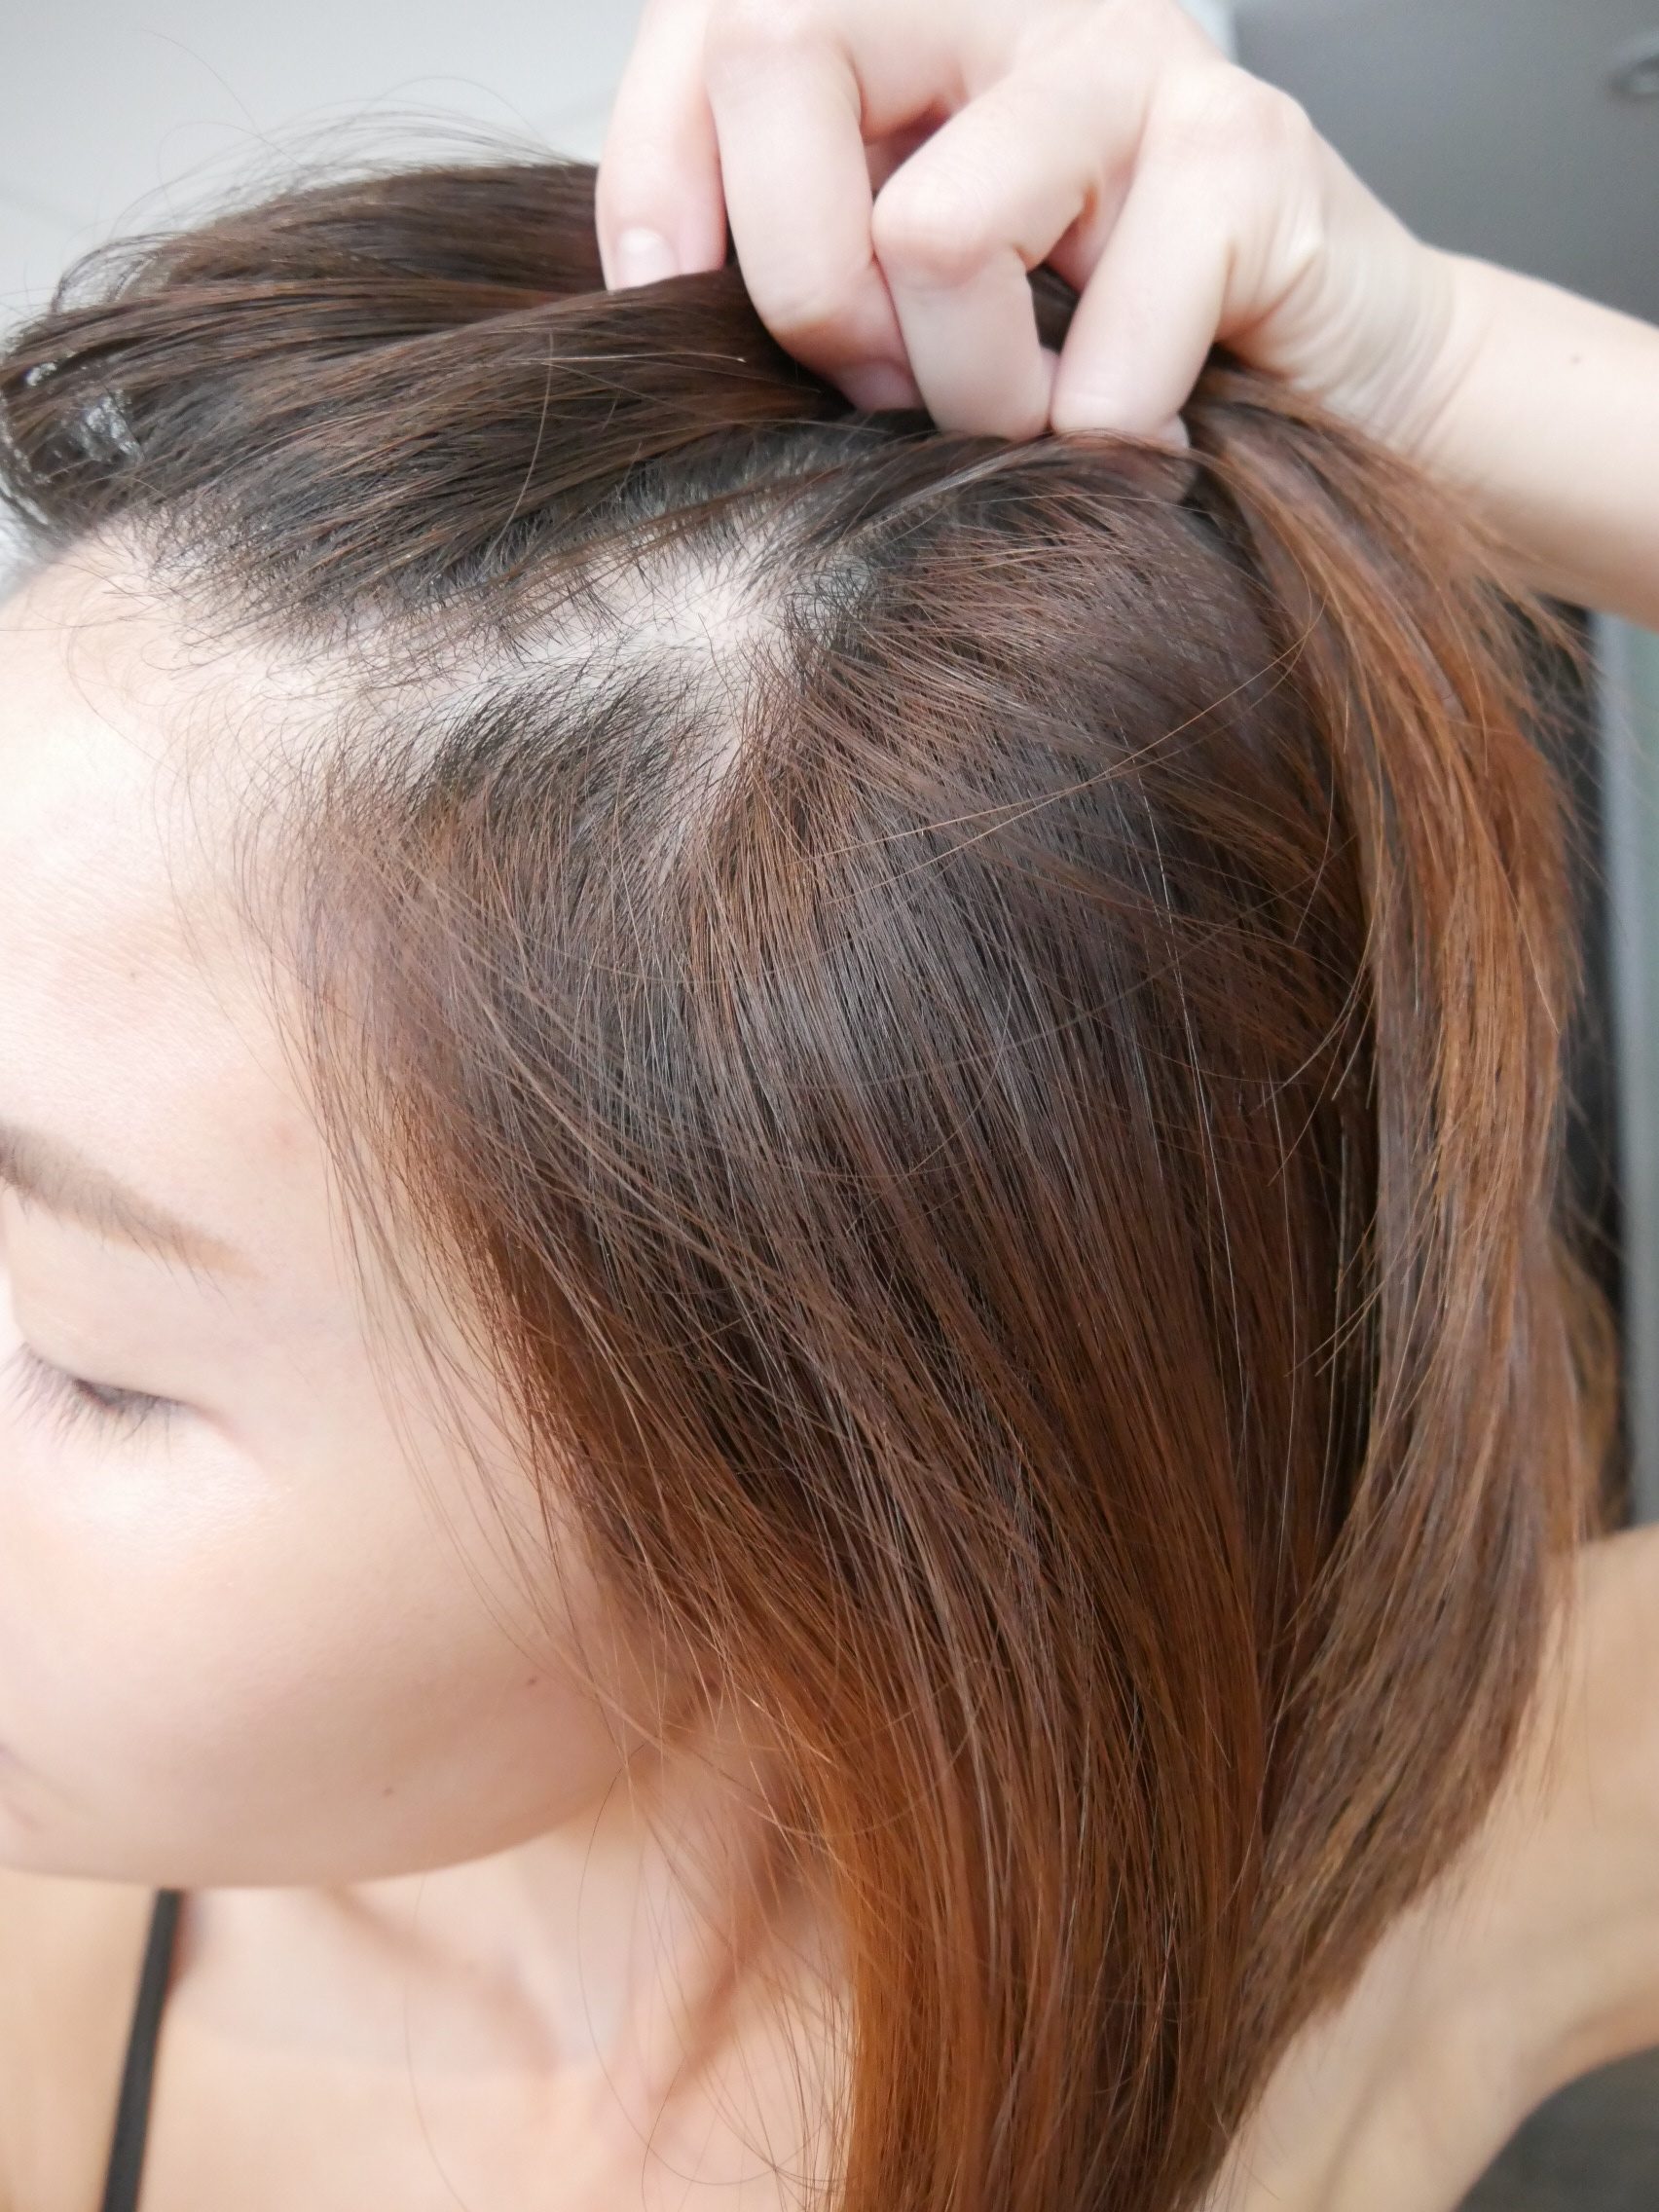 [啾團] 新上市Karui卡洛伊-芝.養髮 烏絲萬縷養髮精華液打造烏黑亮澤、強健髮根並呈現豐厚感的關鍵髮品